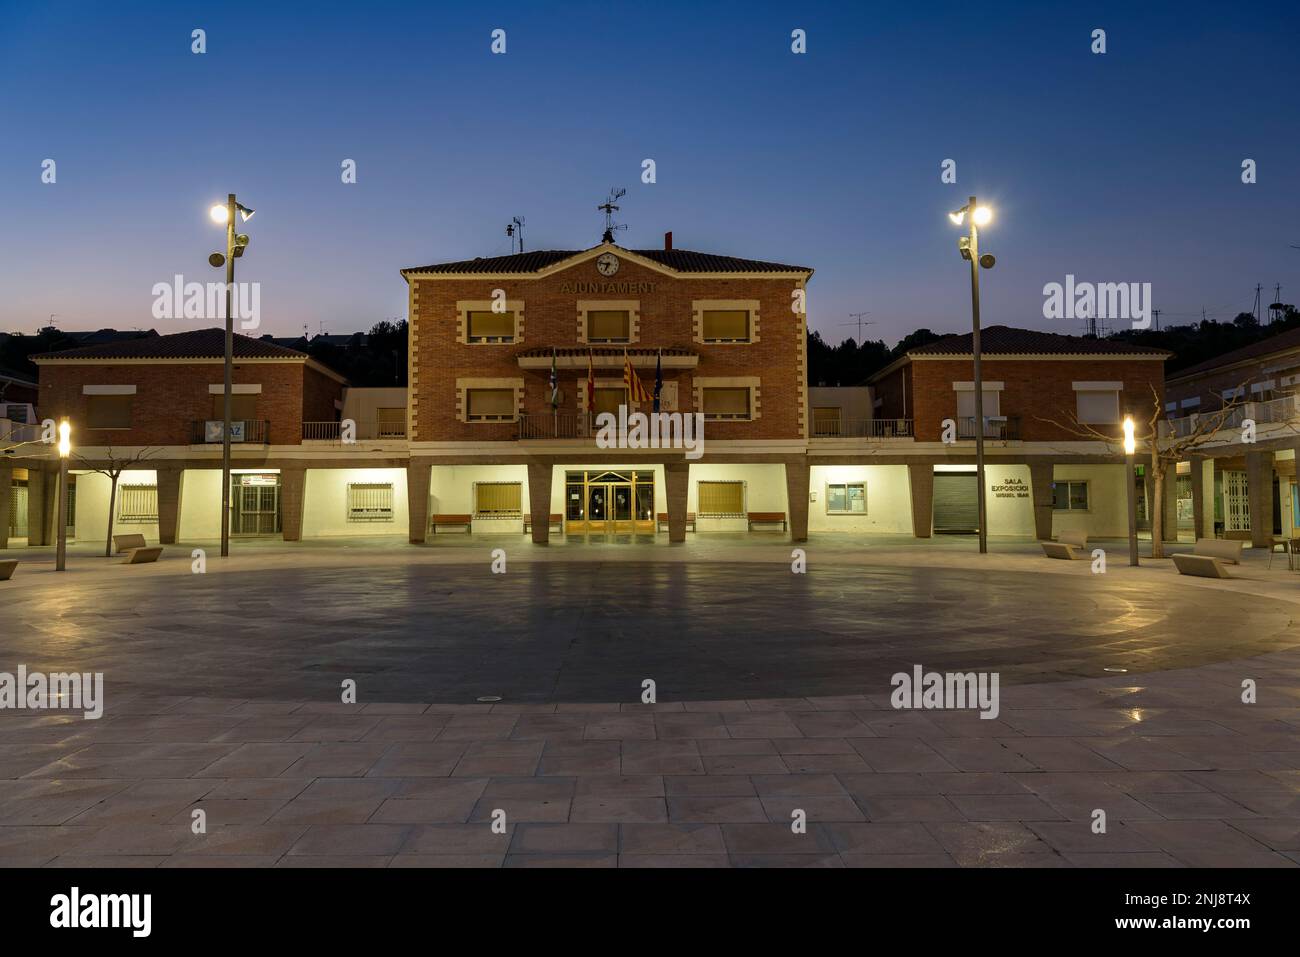 Abenddämmerung und blaue Stunde auf dem Rathausplatz der neuen Stadt Mequinenza, Bajo Cinca, Zaragoza, Aragon, Spanien ESP: Crepúsculo en Mequinenza Aragón Stockfoto